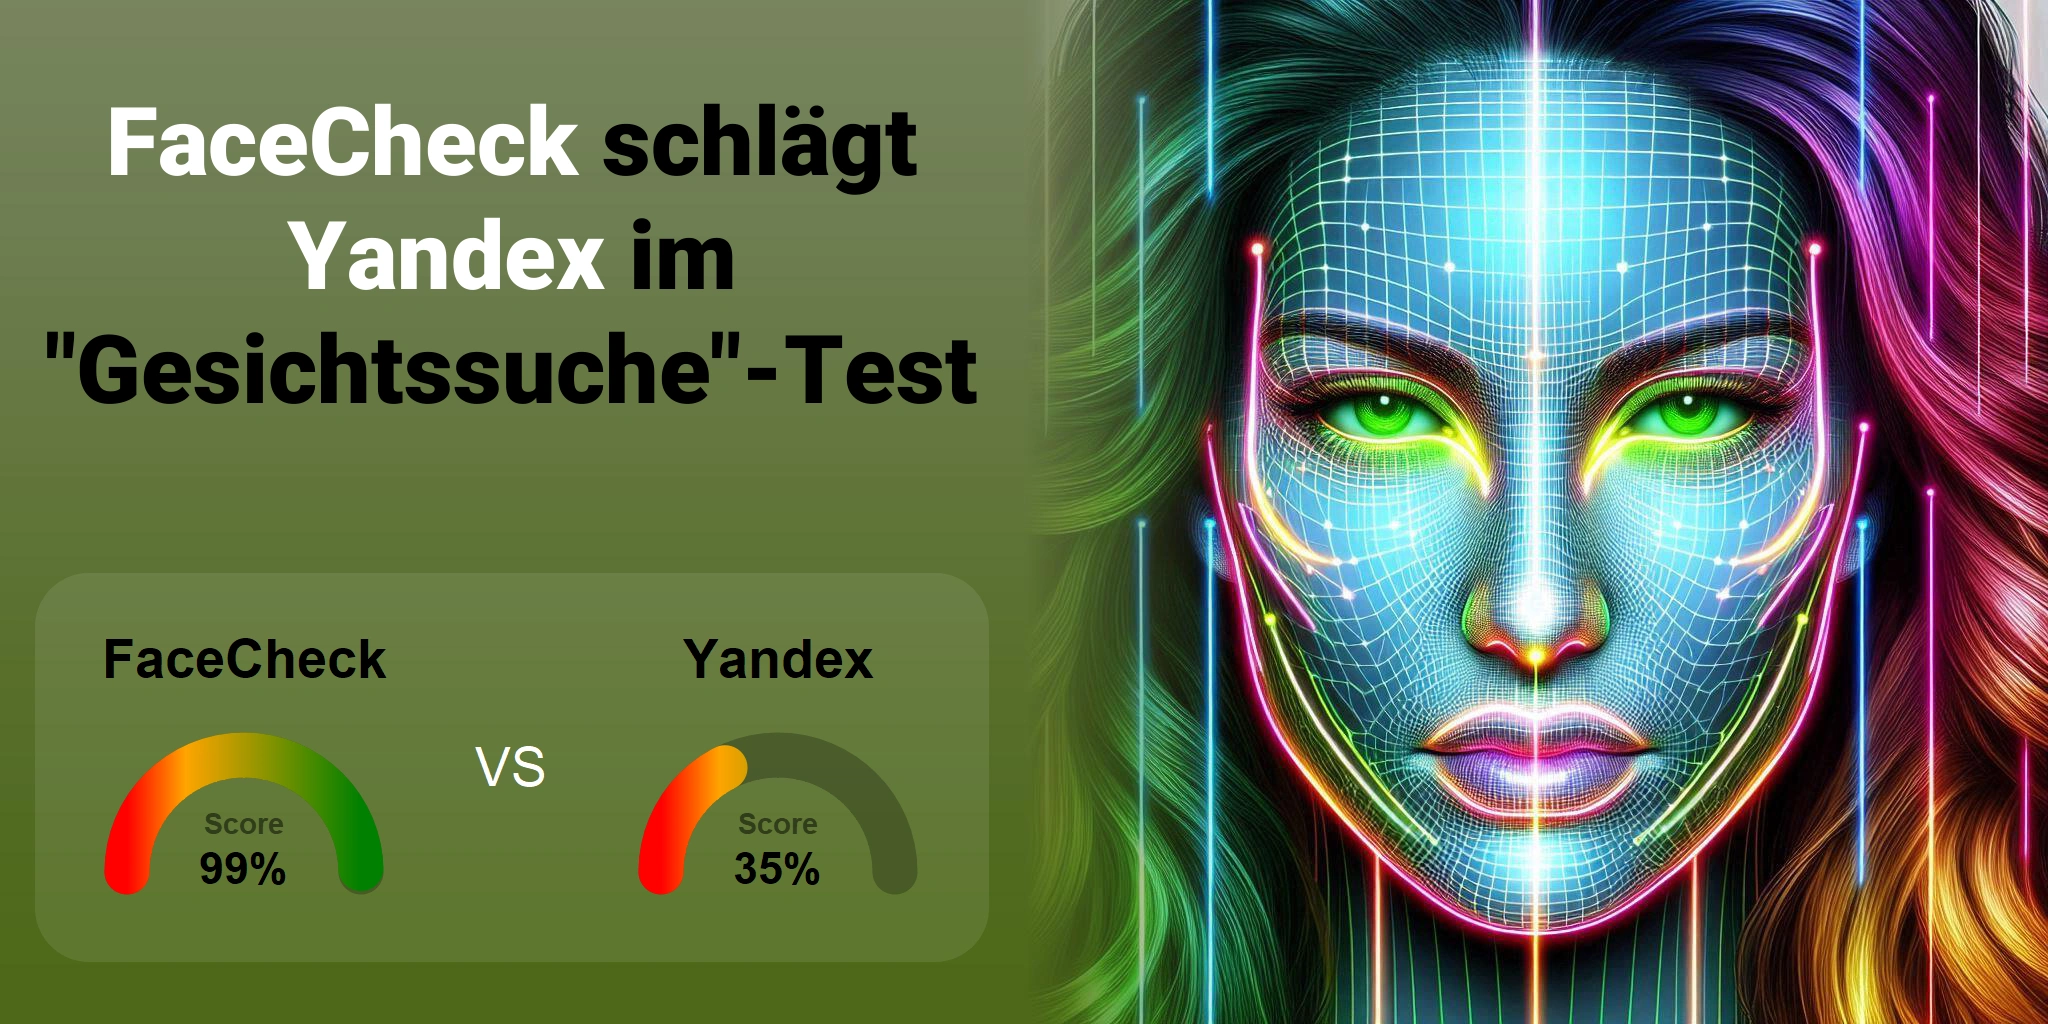 Welcher ist besser für die Gesichtssuche: <br>FaceCheck oder Yandex?